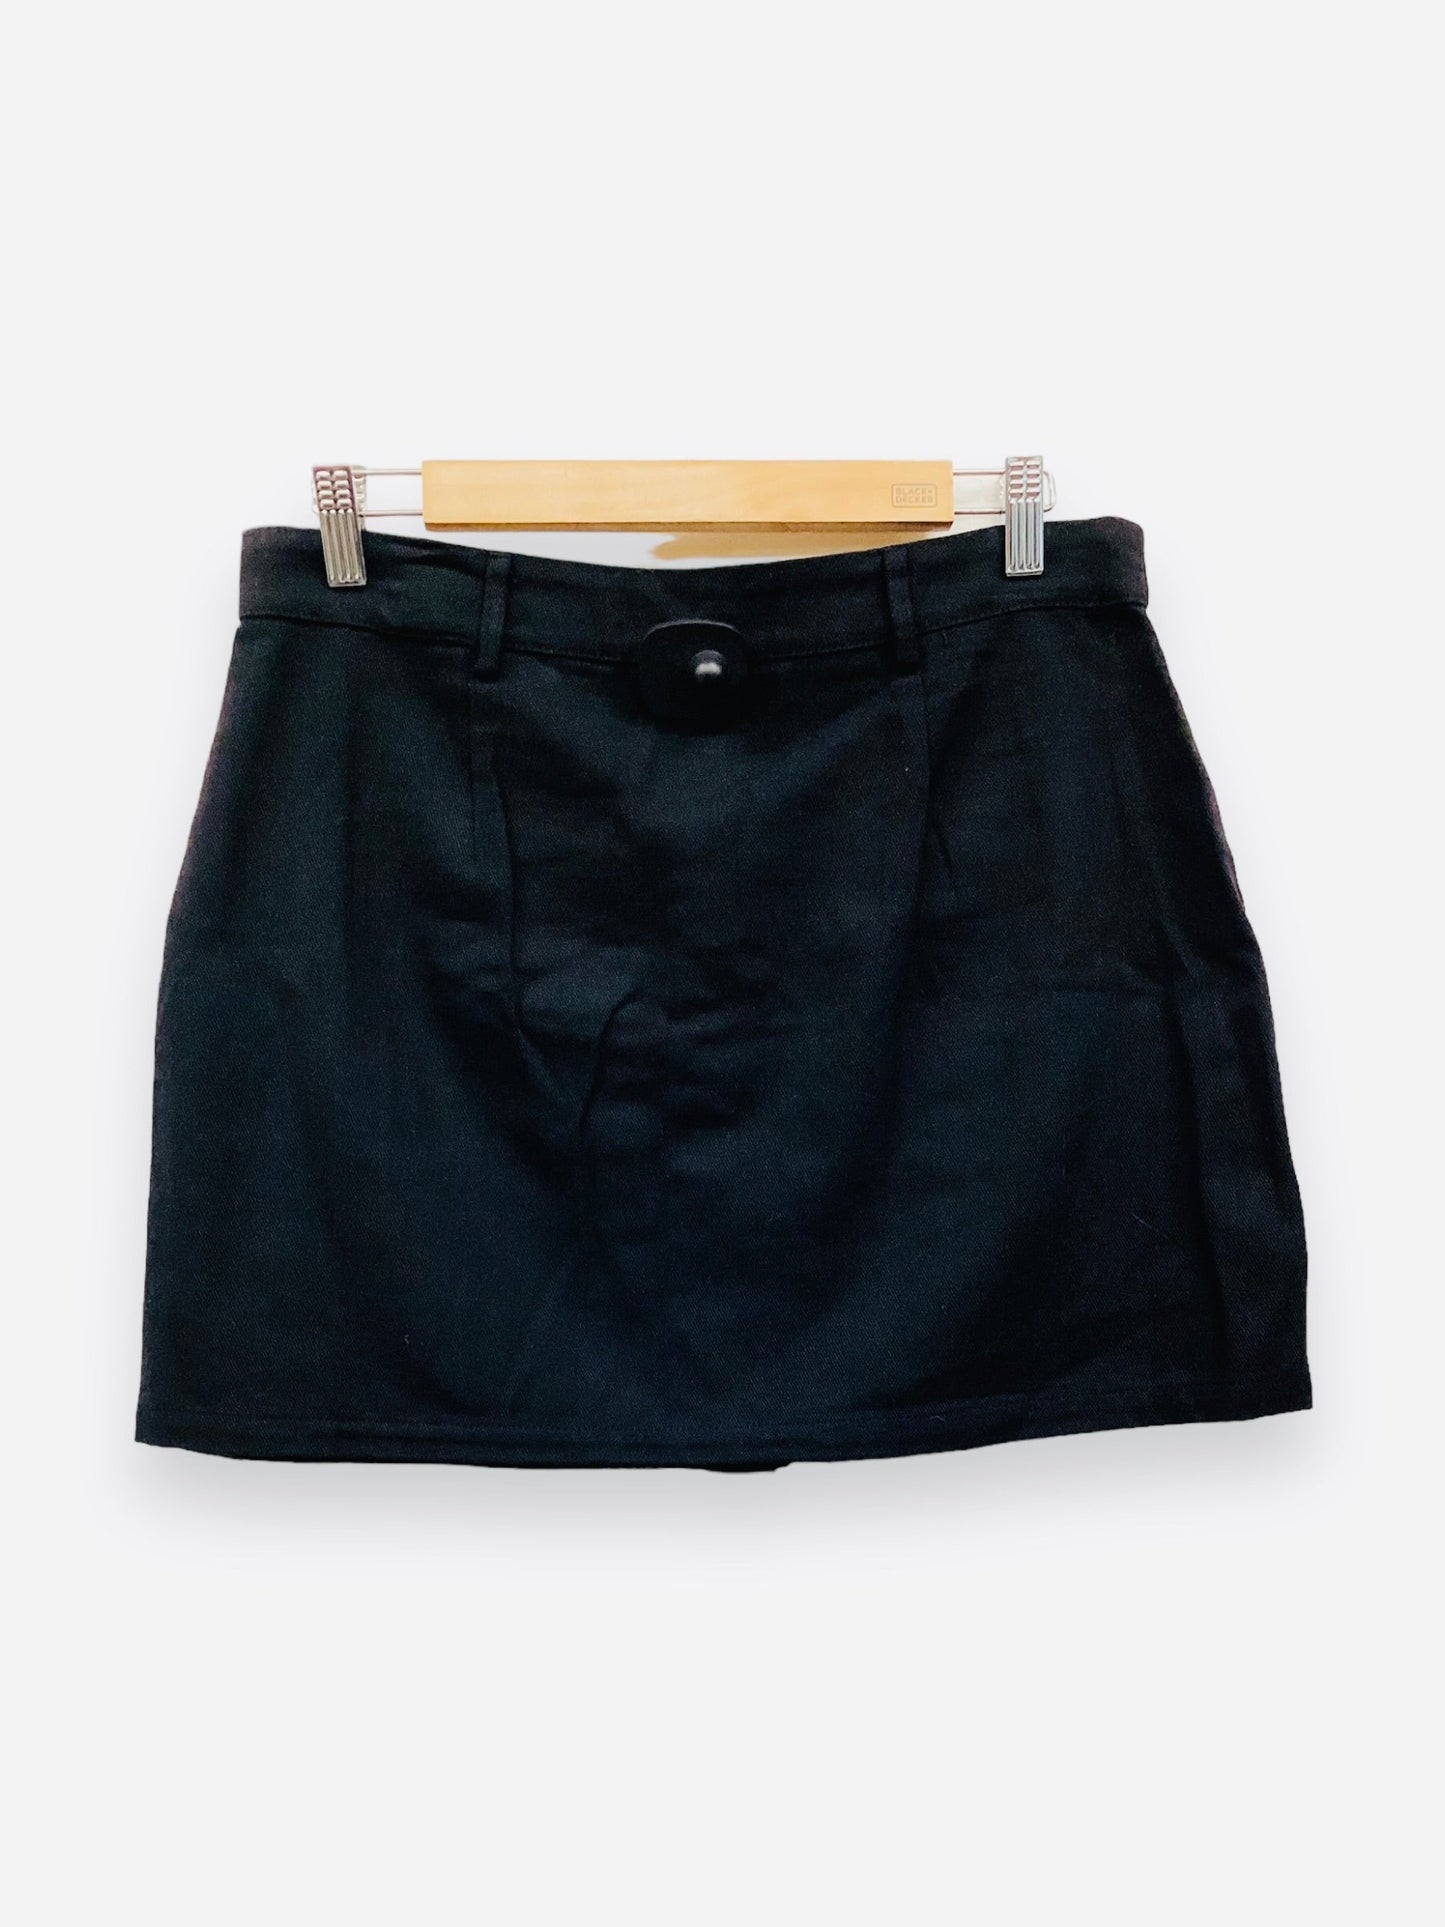 NWT Black Skirt Mini & Short Hyfve, Size L